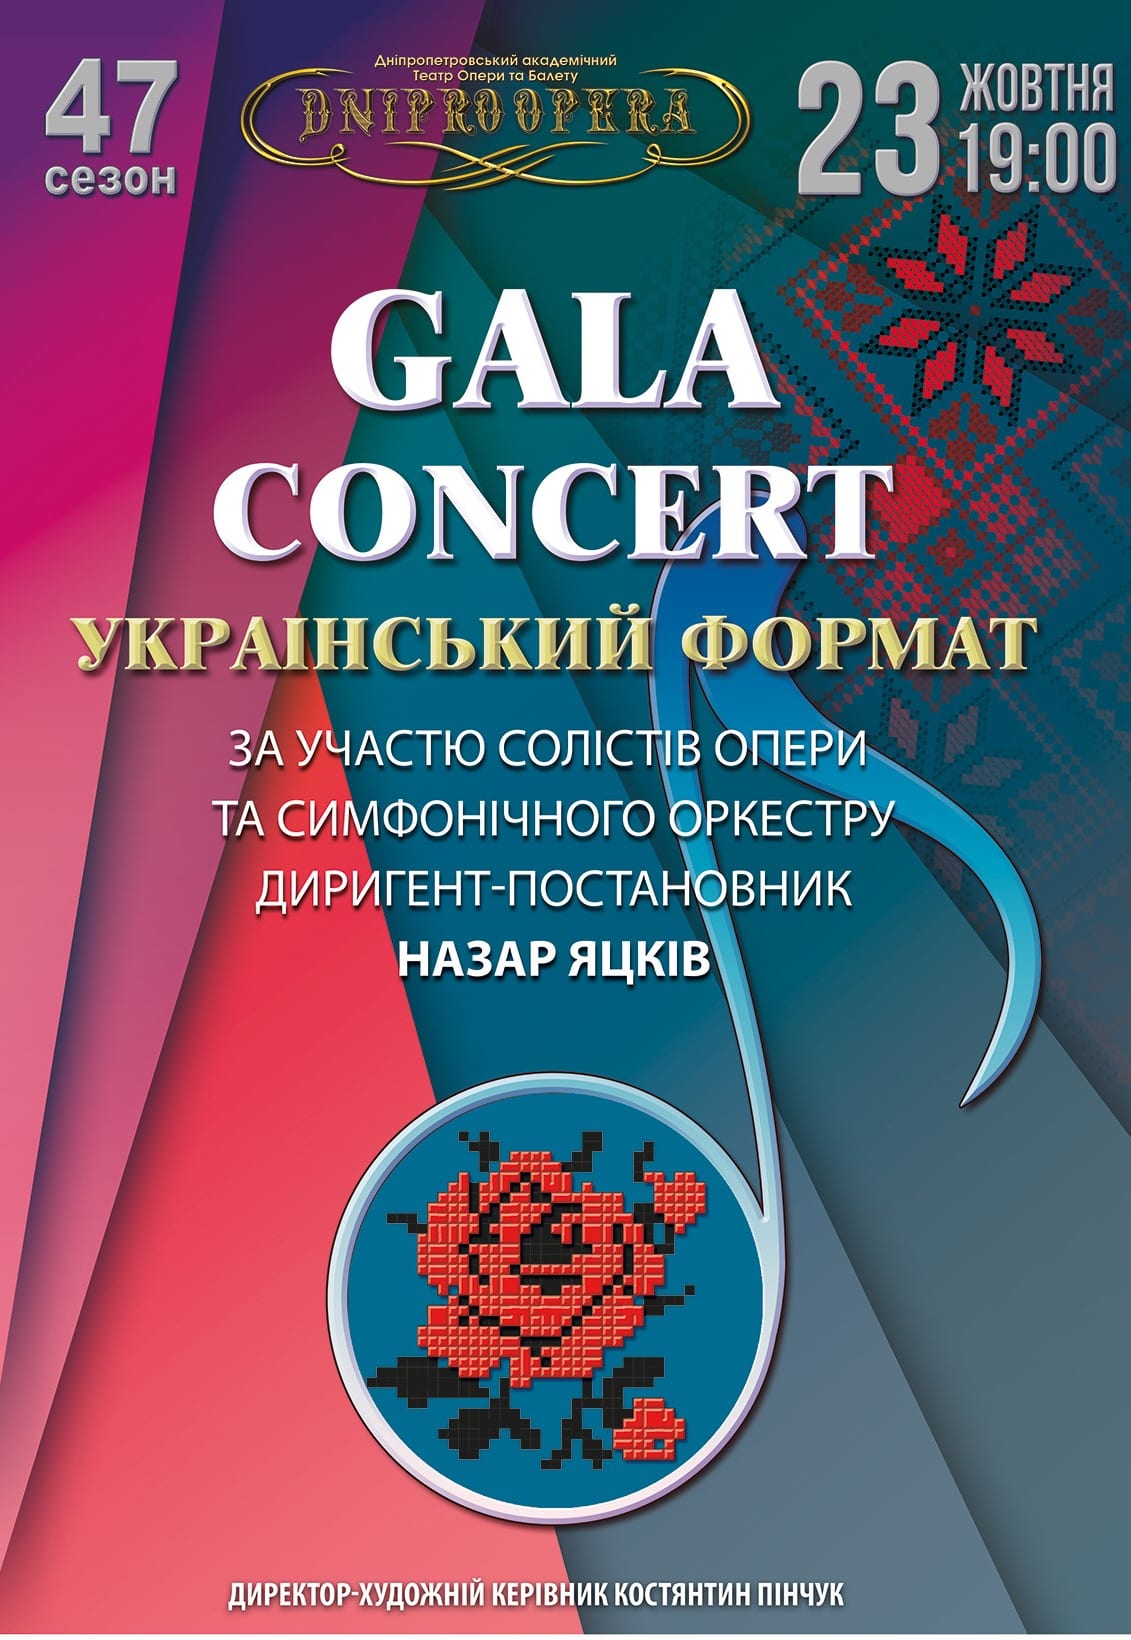 Gala Concert Днепр, 23.11.2020, цена, расписание, купить билеты. Афиша Днепра